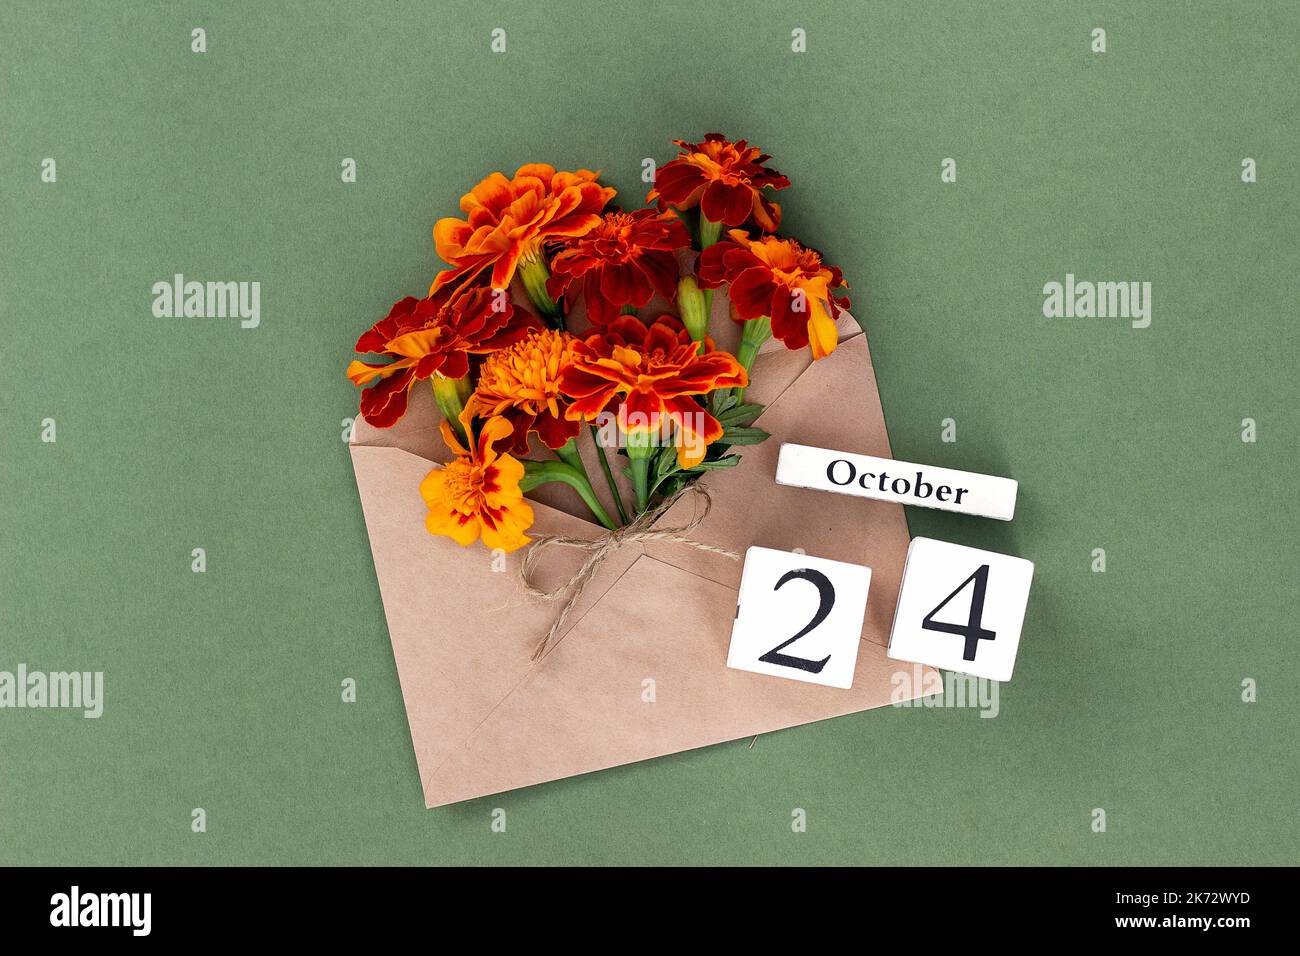 24 octobre. Bouquet de fleurs orange en enveloppe artisanale et date calendrier sur fond vert. Concept minimal Hello Fall. Modèle pour votre conception, gr Banque D'Images